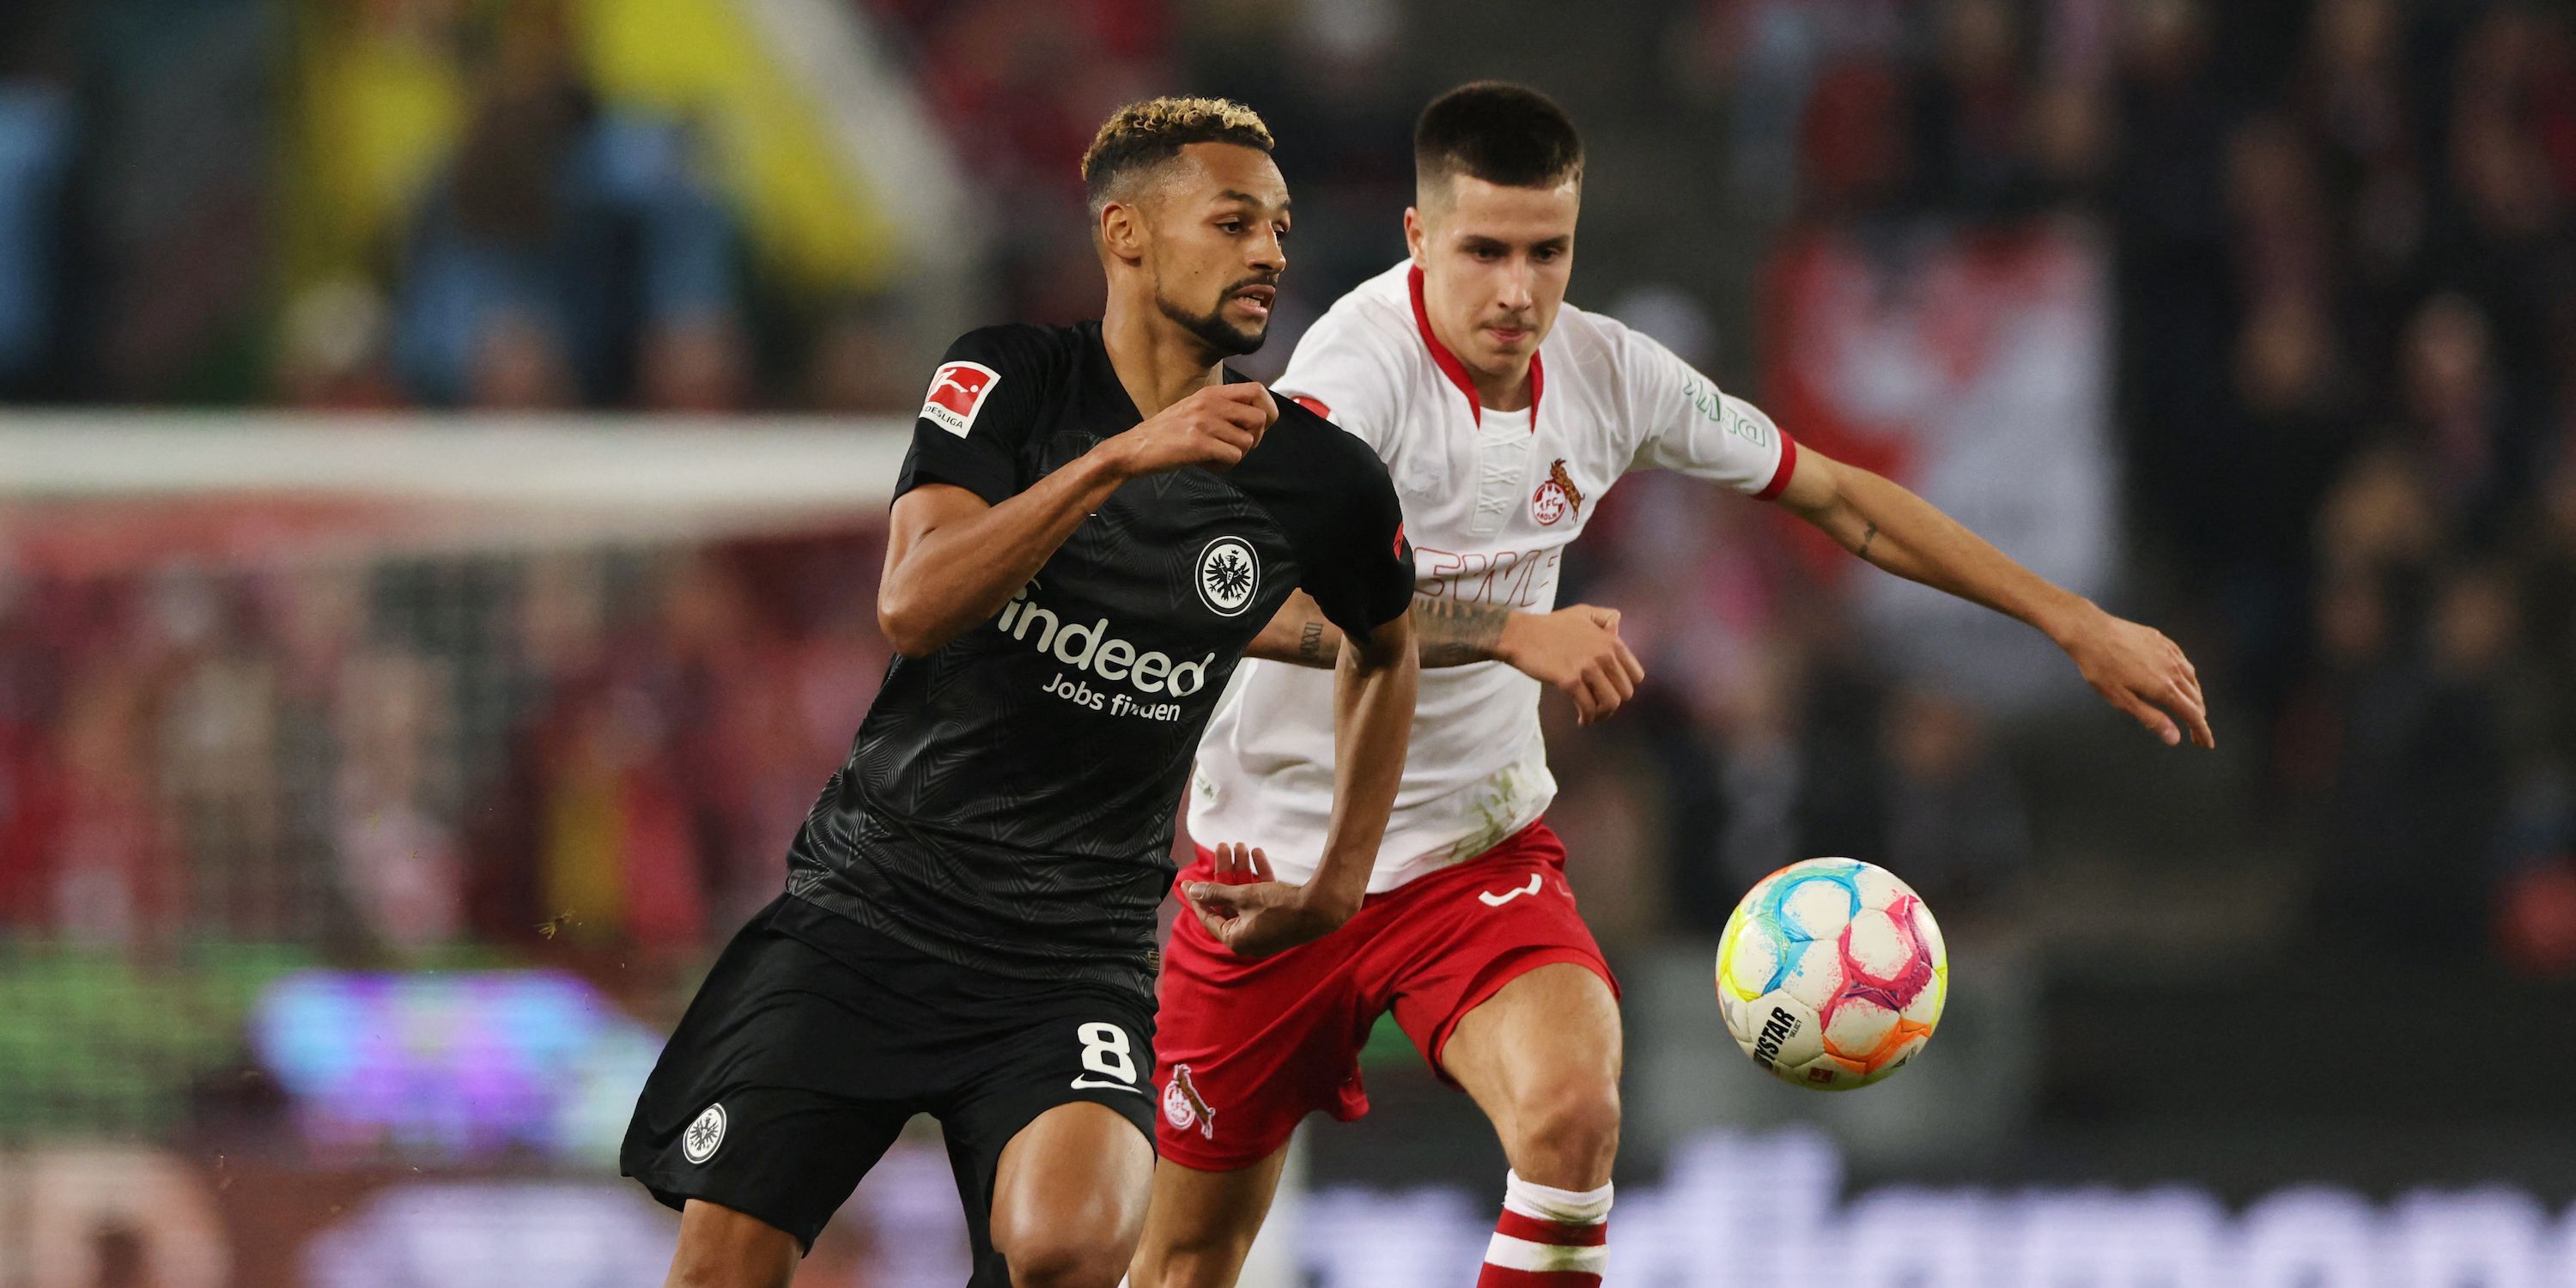 Eintracht Frankfurt's Djibril Sow in action